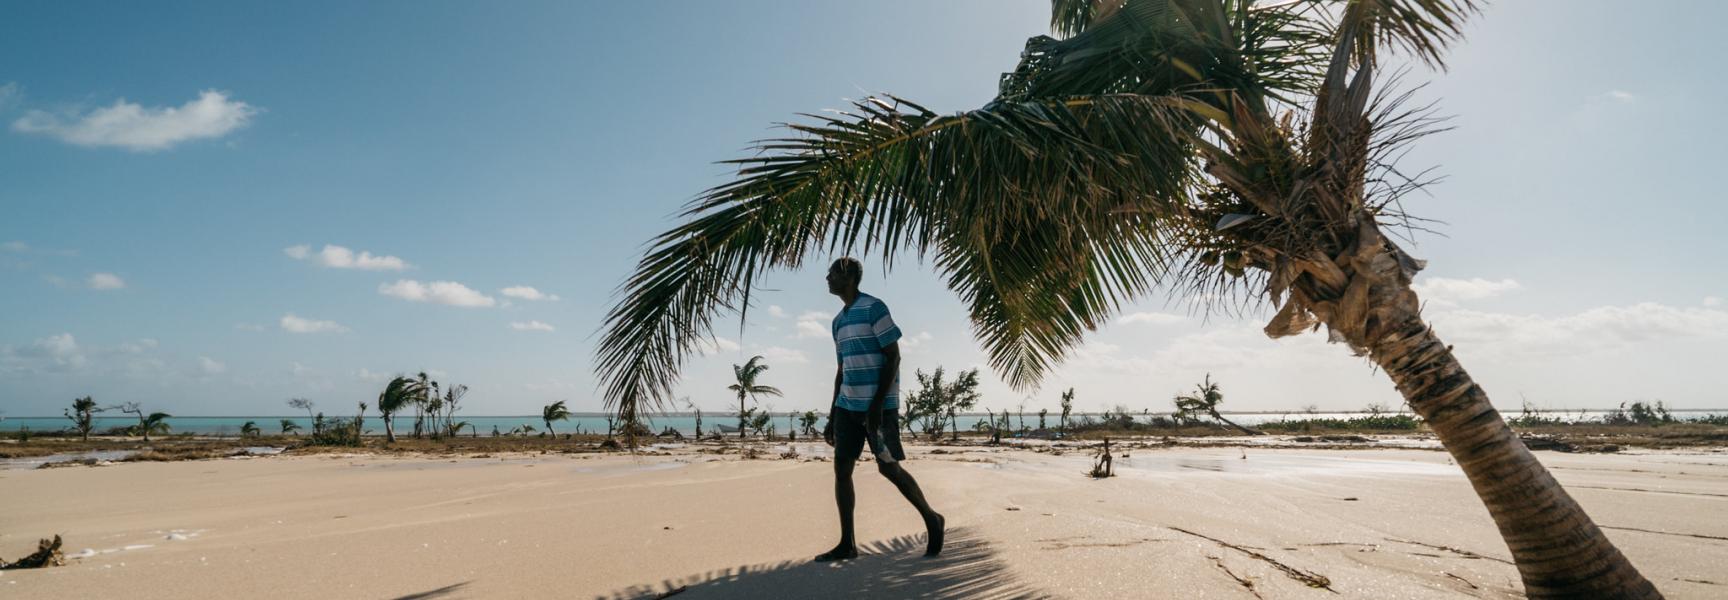 Persona caminando por una palmera en una playa de Antigua y Barbuda